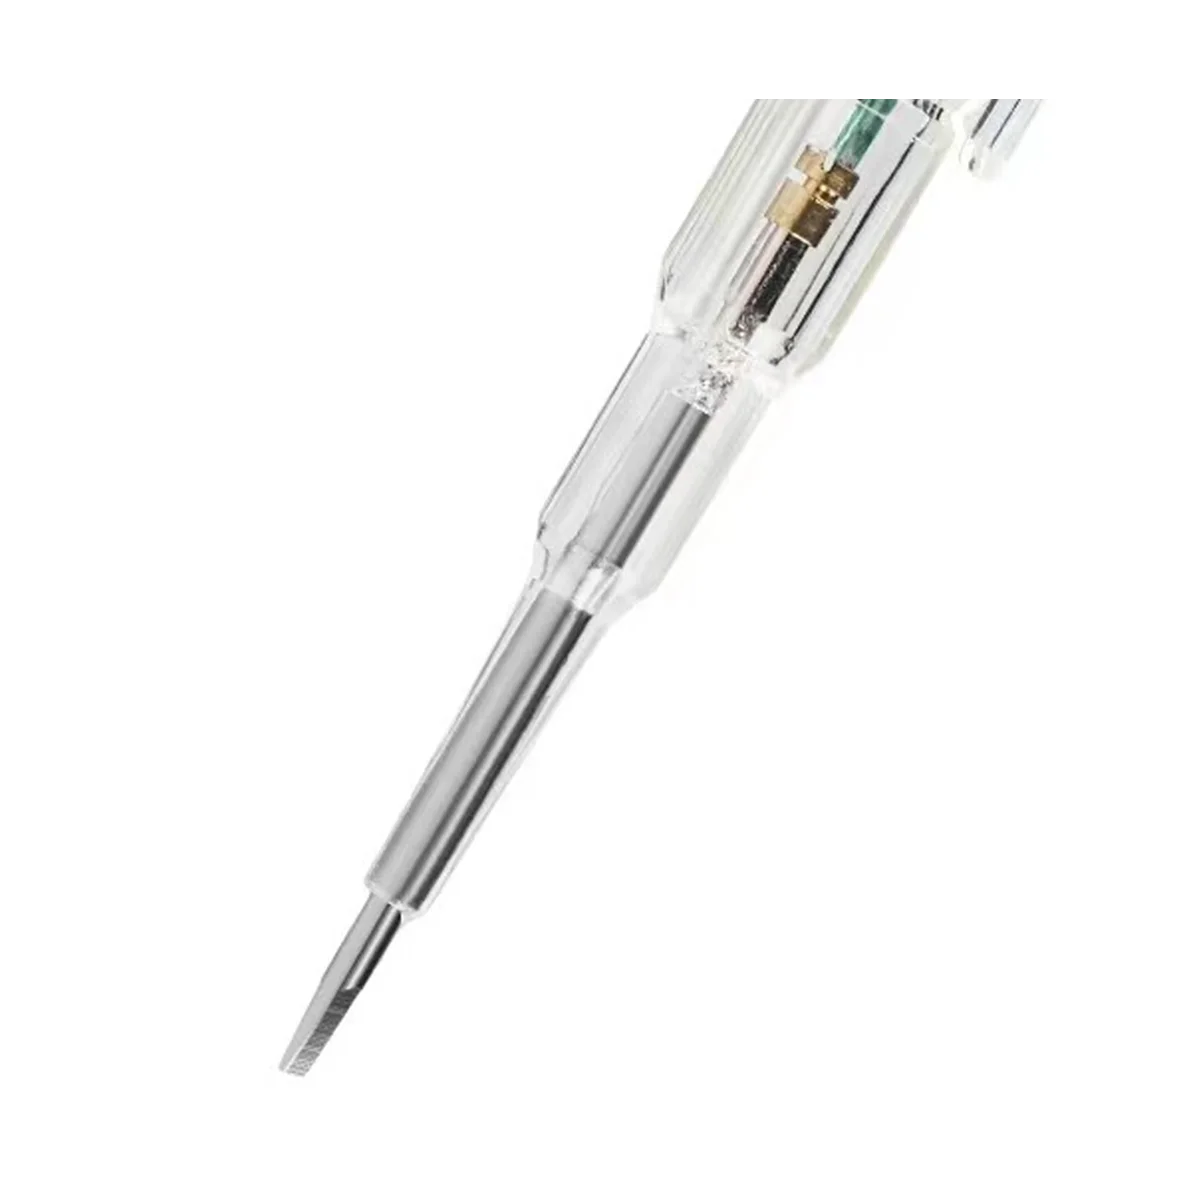  többfunkciós elektromos toll nagy fényerejű dupla lámpás elektromos toll mérő villanyszerelő indukciós ceruza - 5